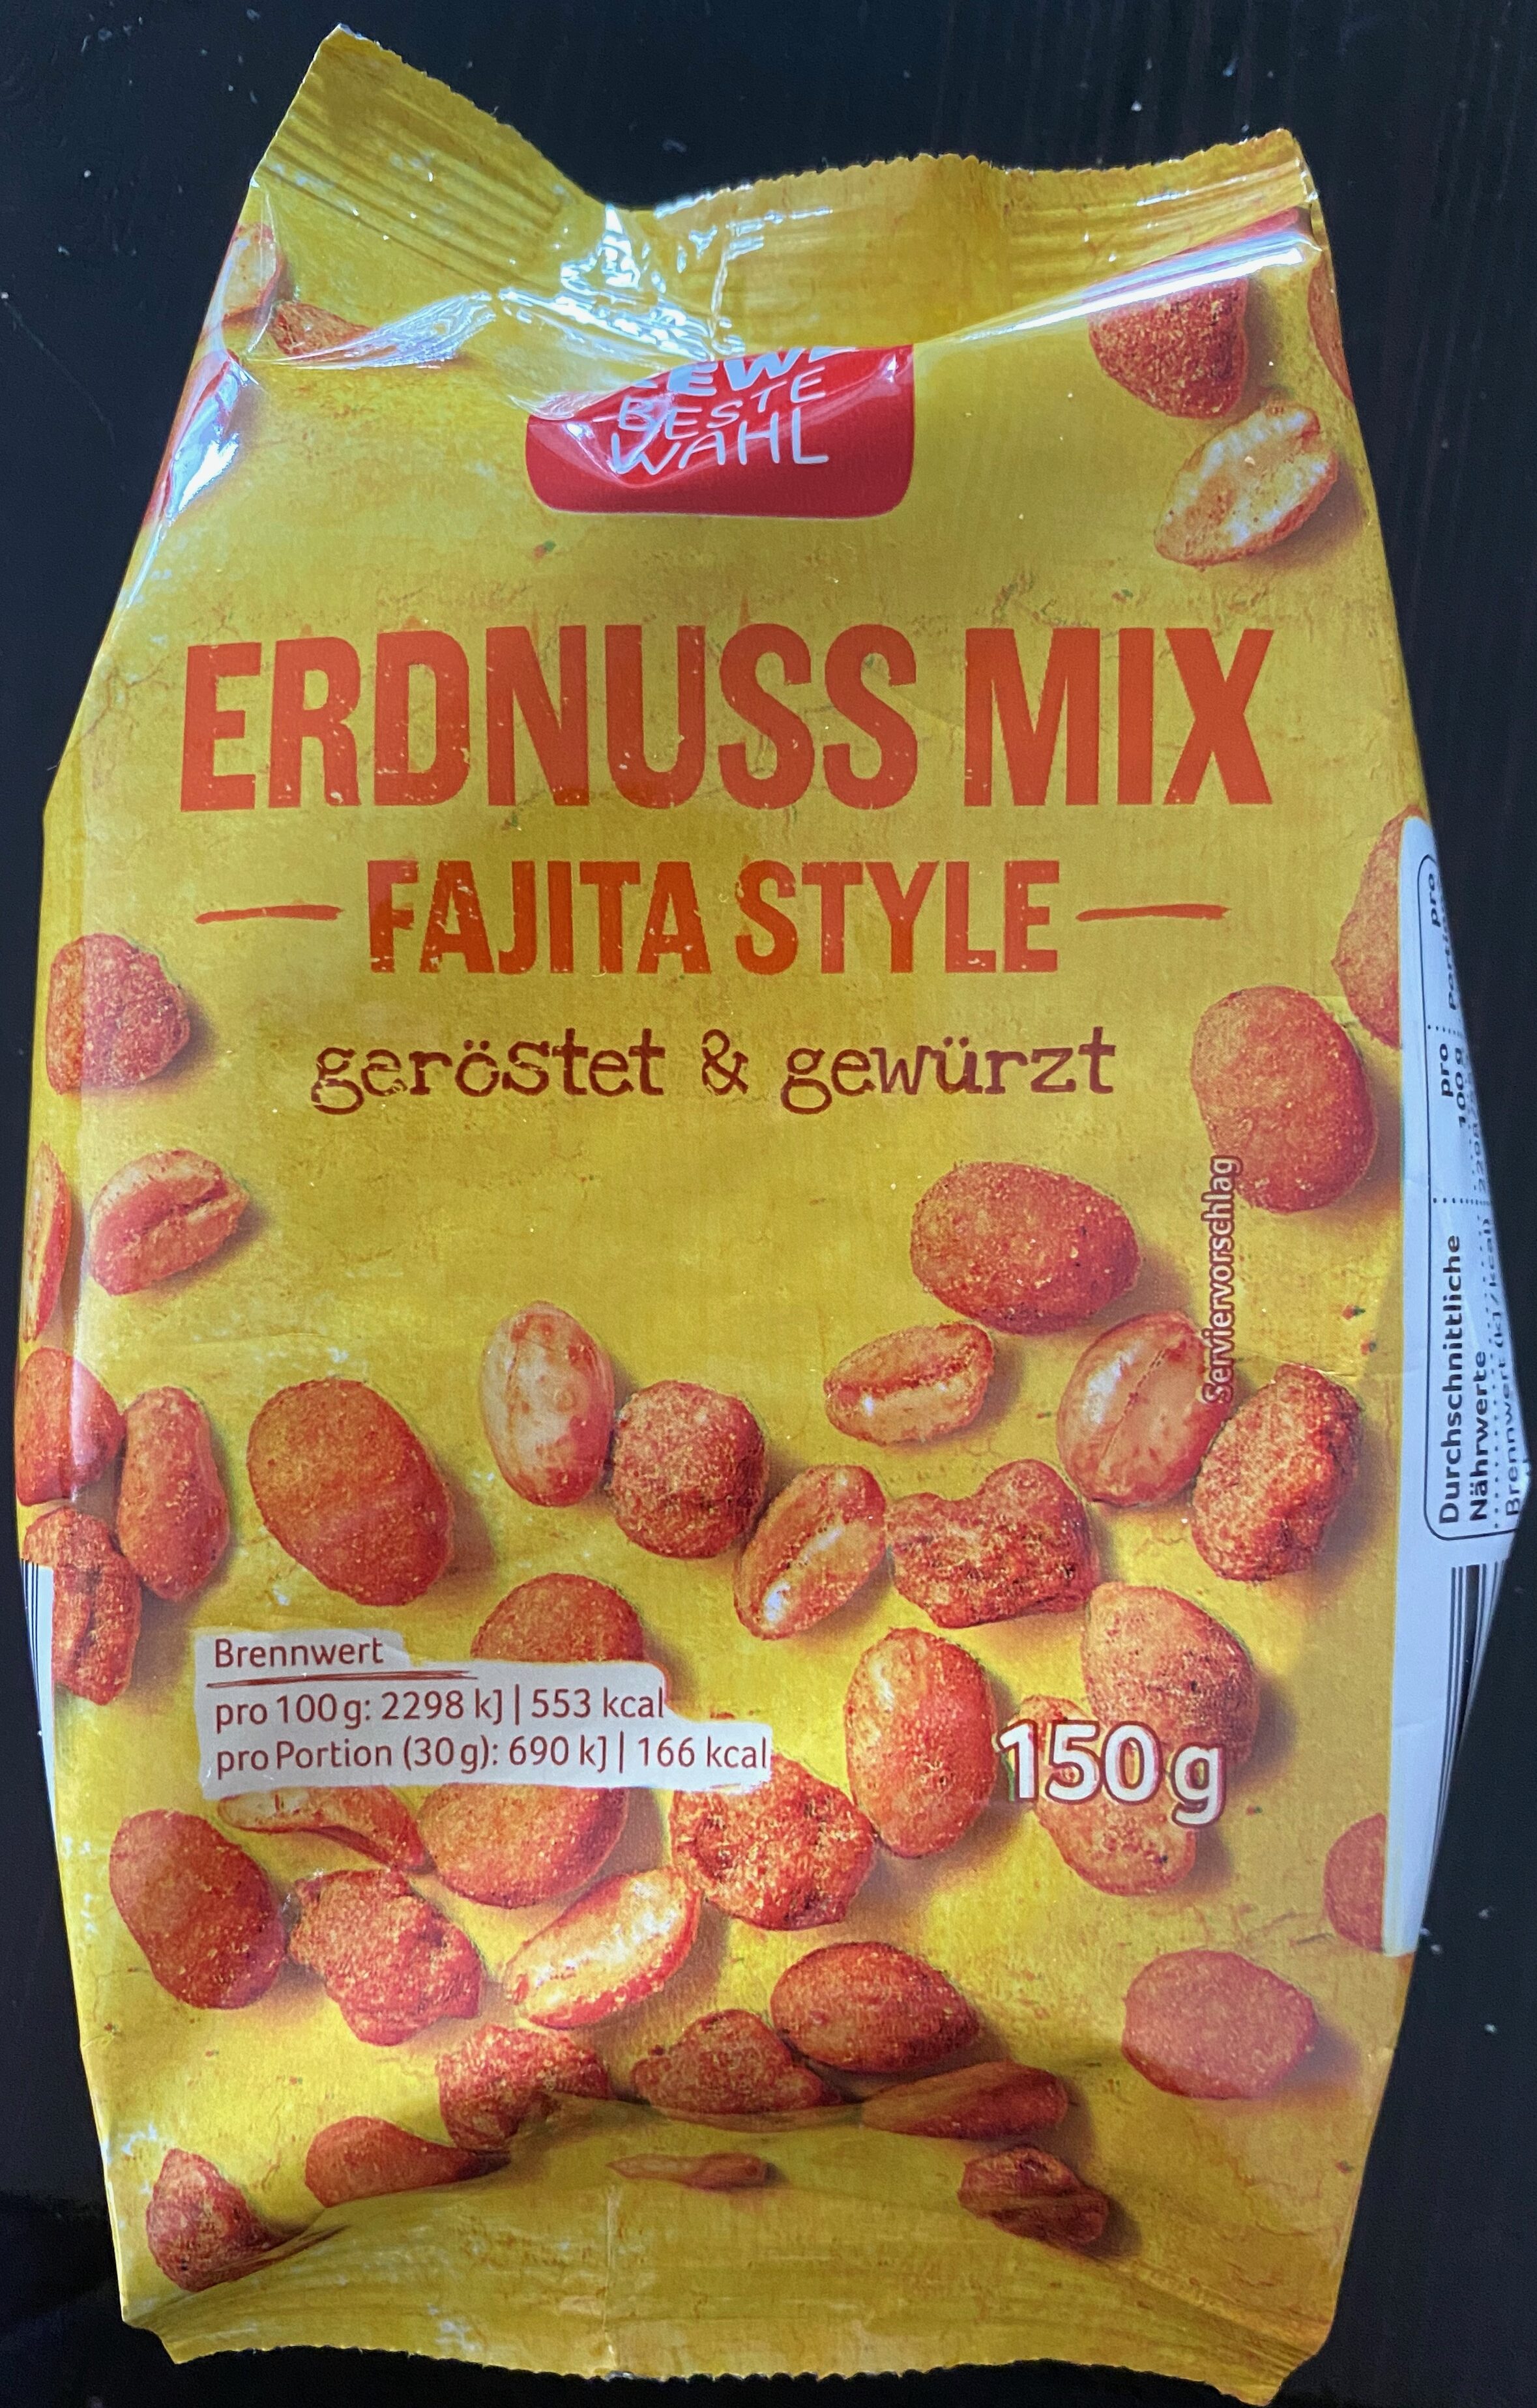 Rewe Beste Wahl Erdnuss Mix Fajita Style - Produkt